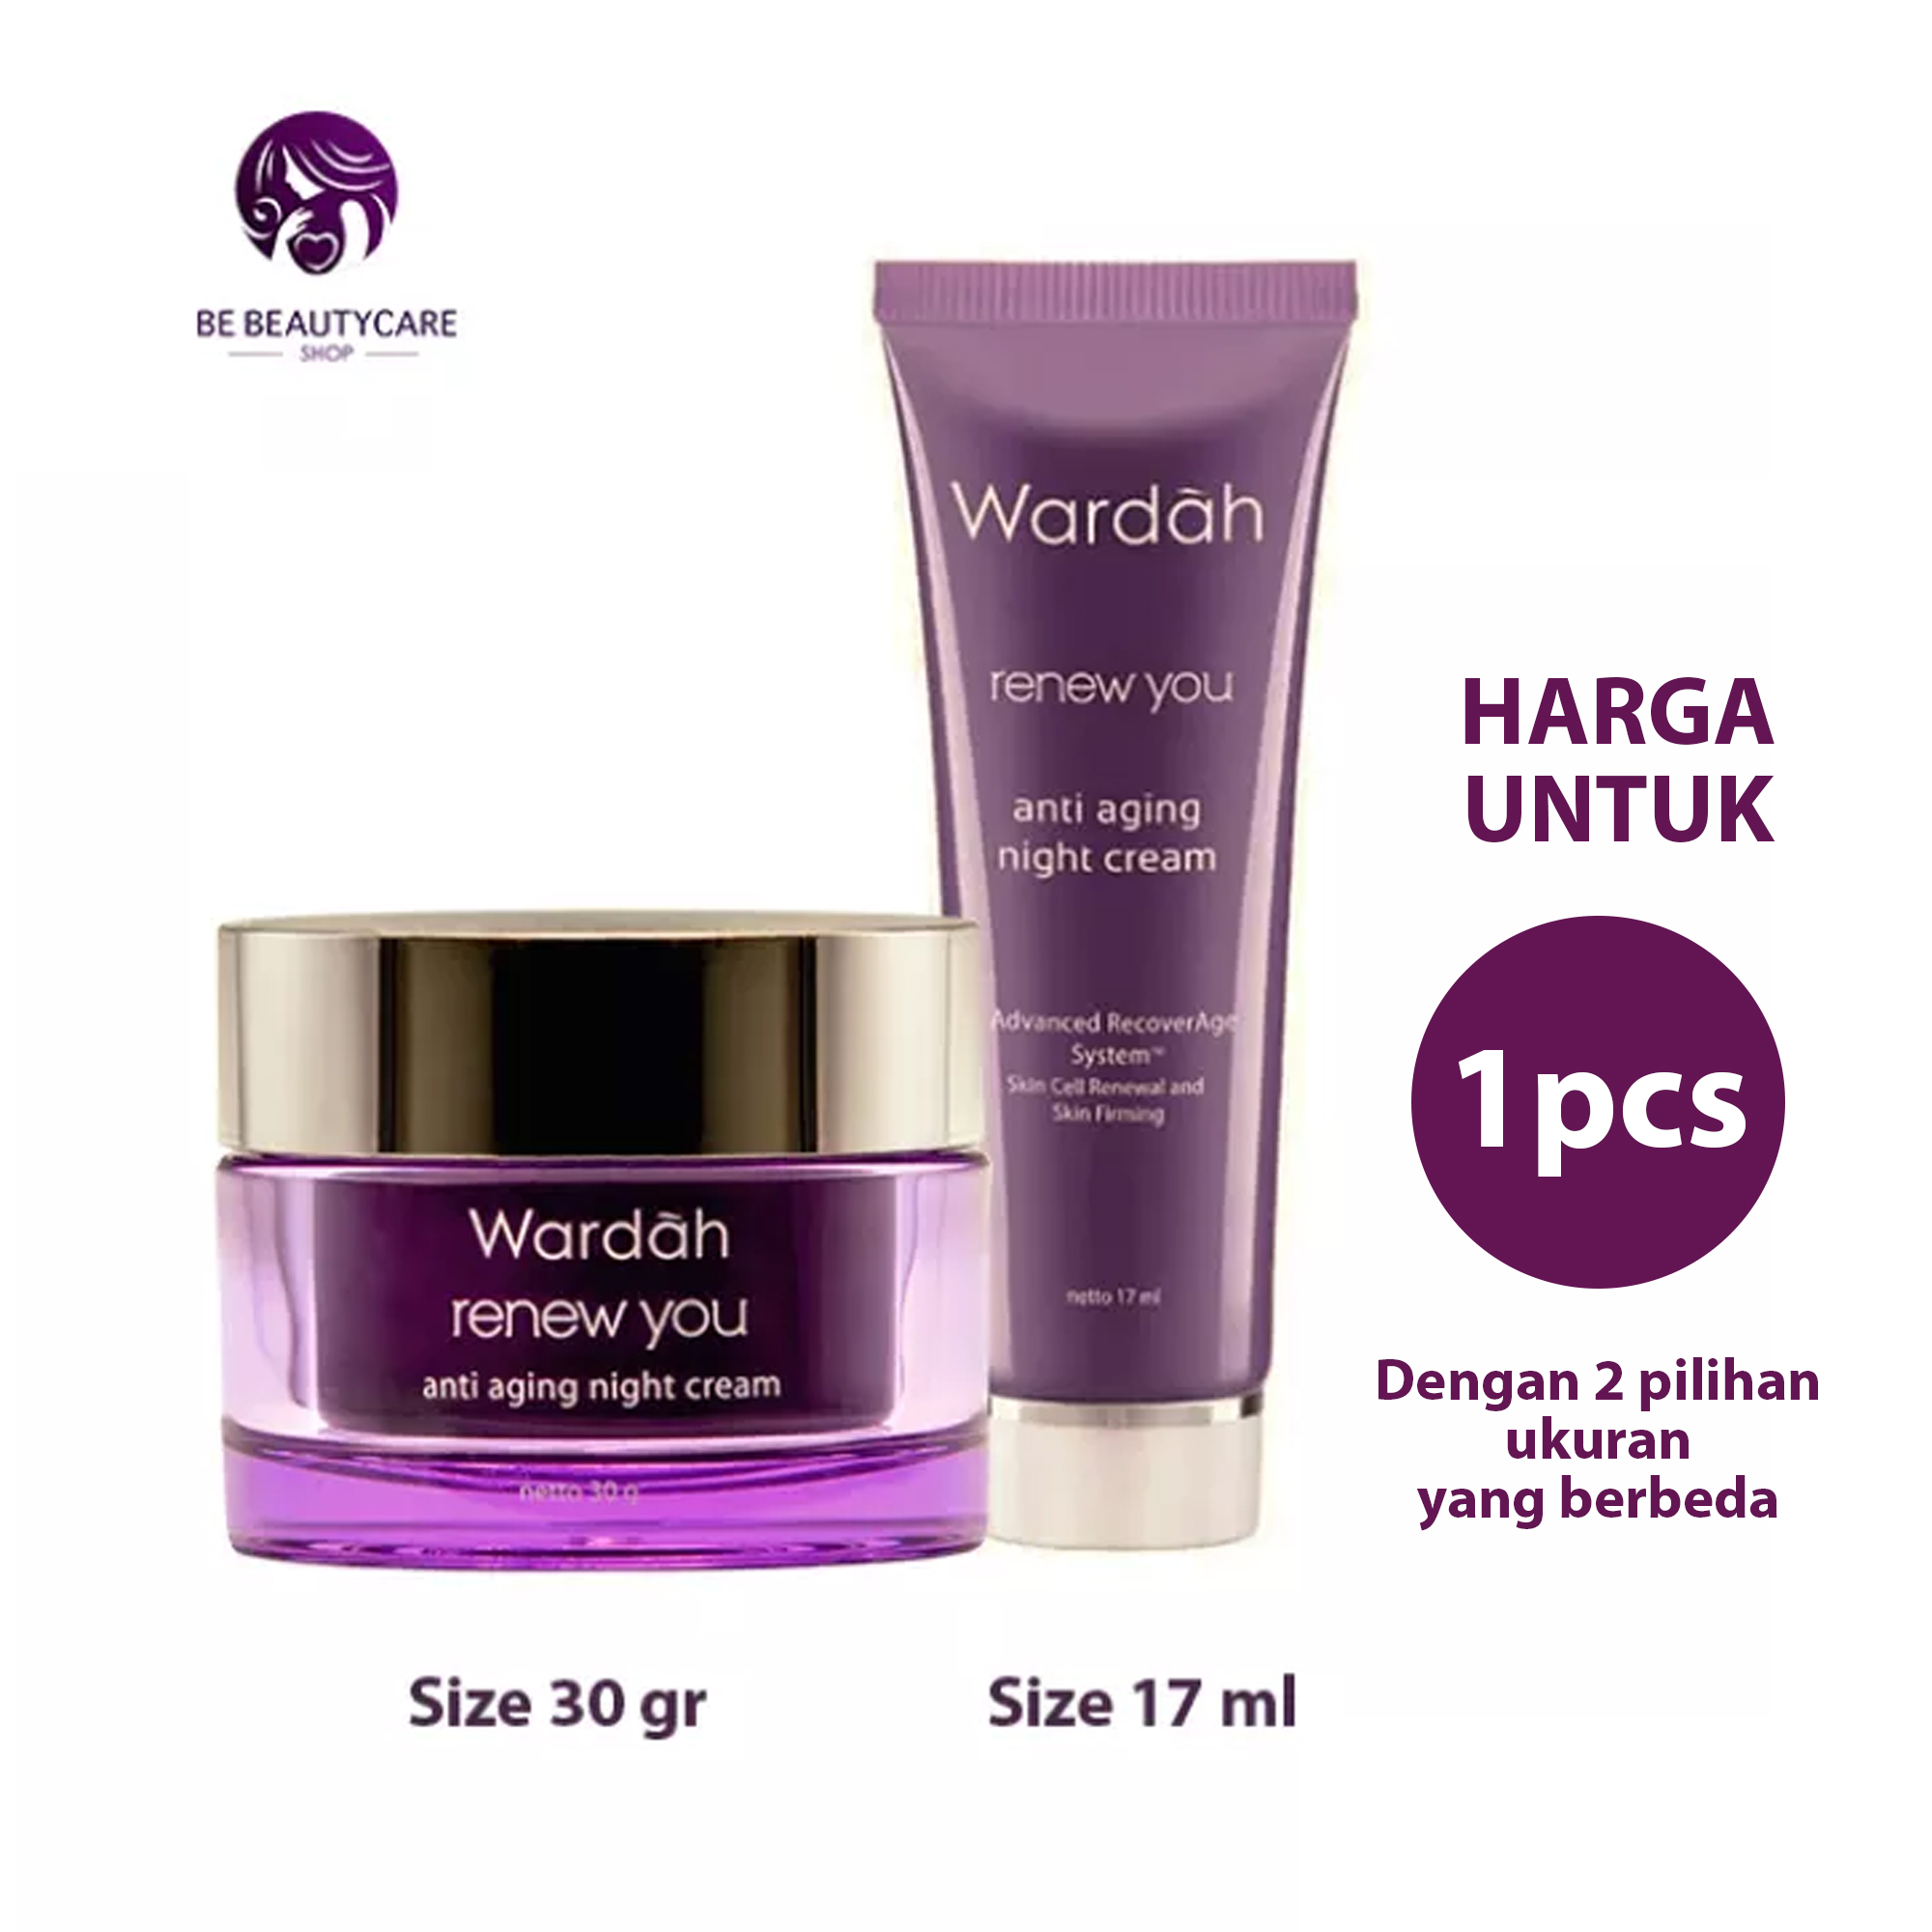 Wardah Renew You Anti Aging Night Cream Size 30 gr / 17 ml / Krim Malam Wardah / Pelembab Wajah